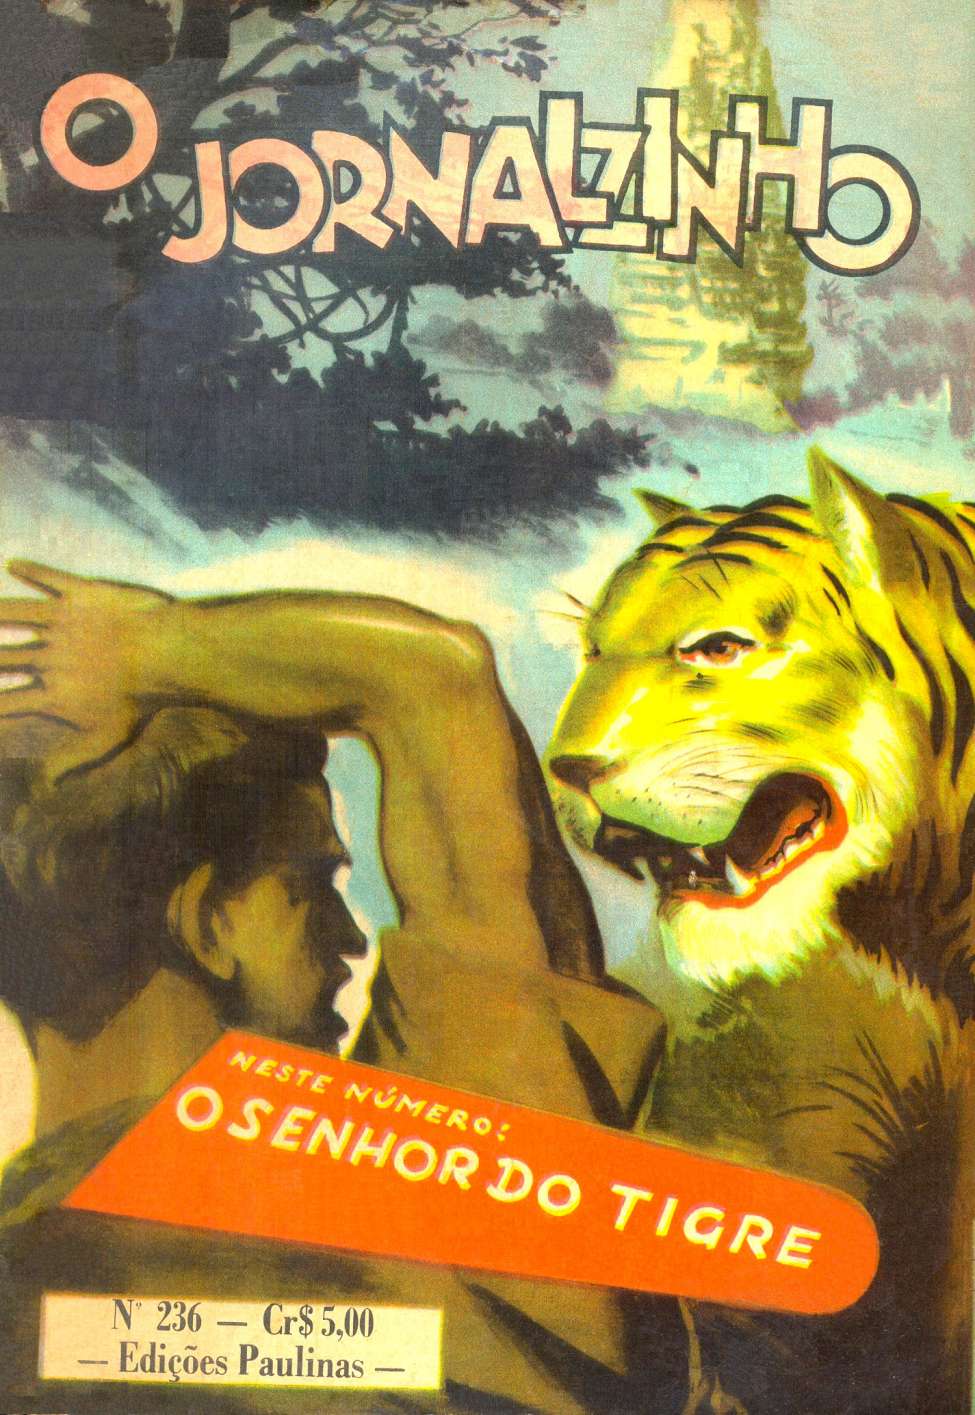 Comic Book Cover For O jornalzinho 236 - O senhor do tigre